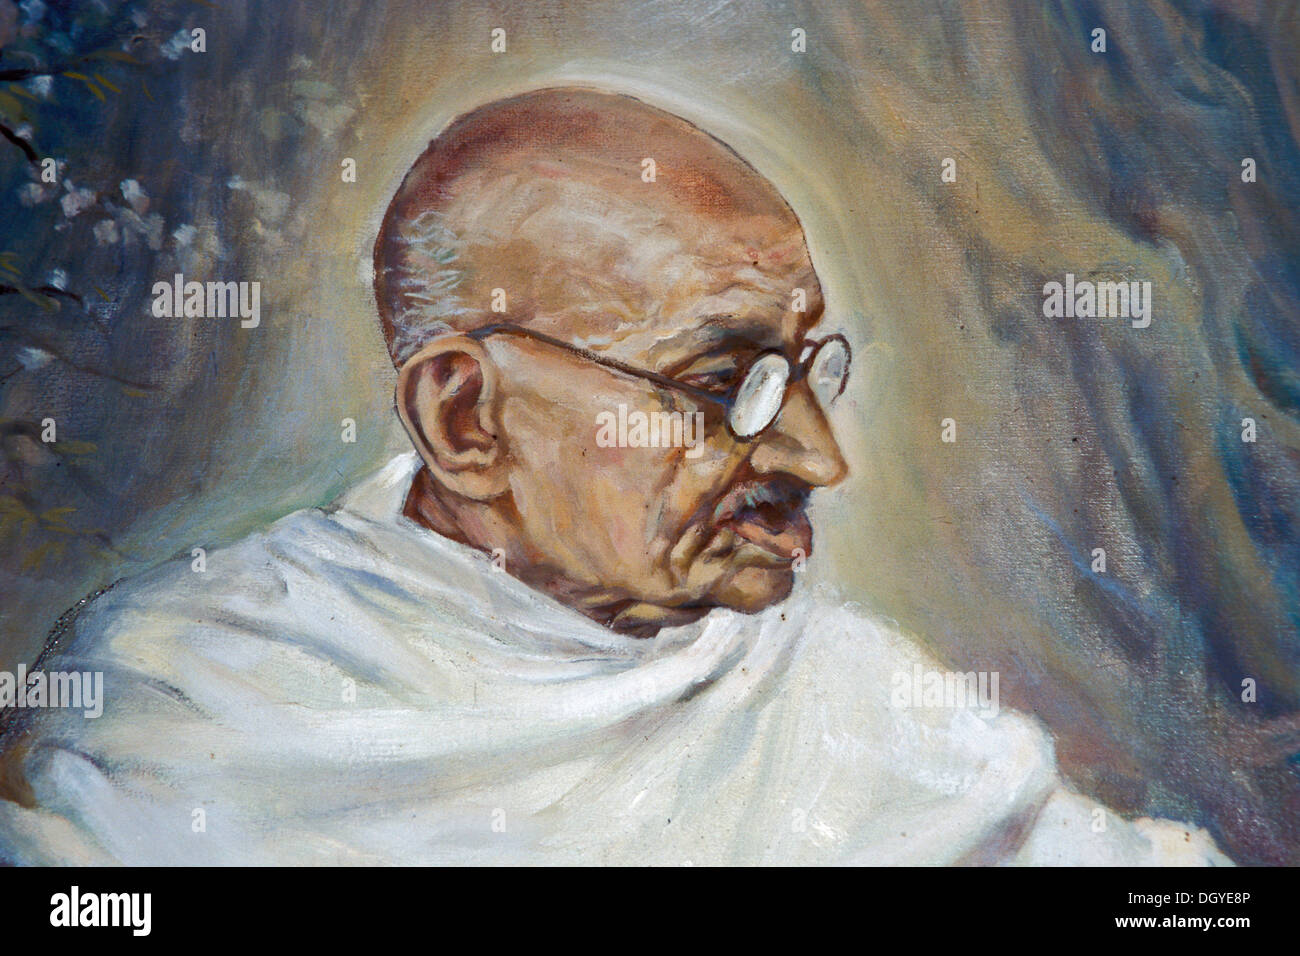 Portrait de l'ancien Mahatma Gandhi, peinture, Aga Khan Palace, Pune ou Poona, Maharashtra, Inde, Asie Banque D'Images